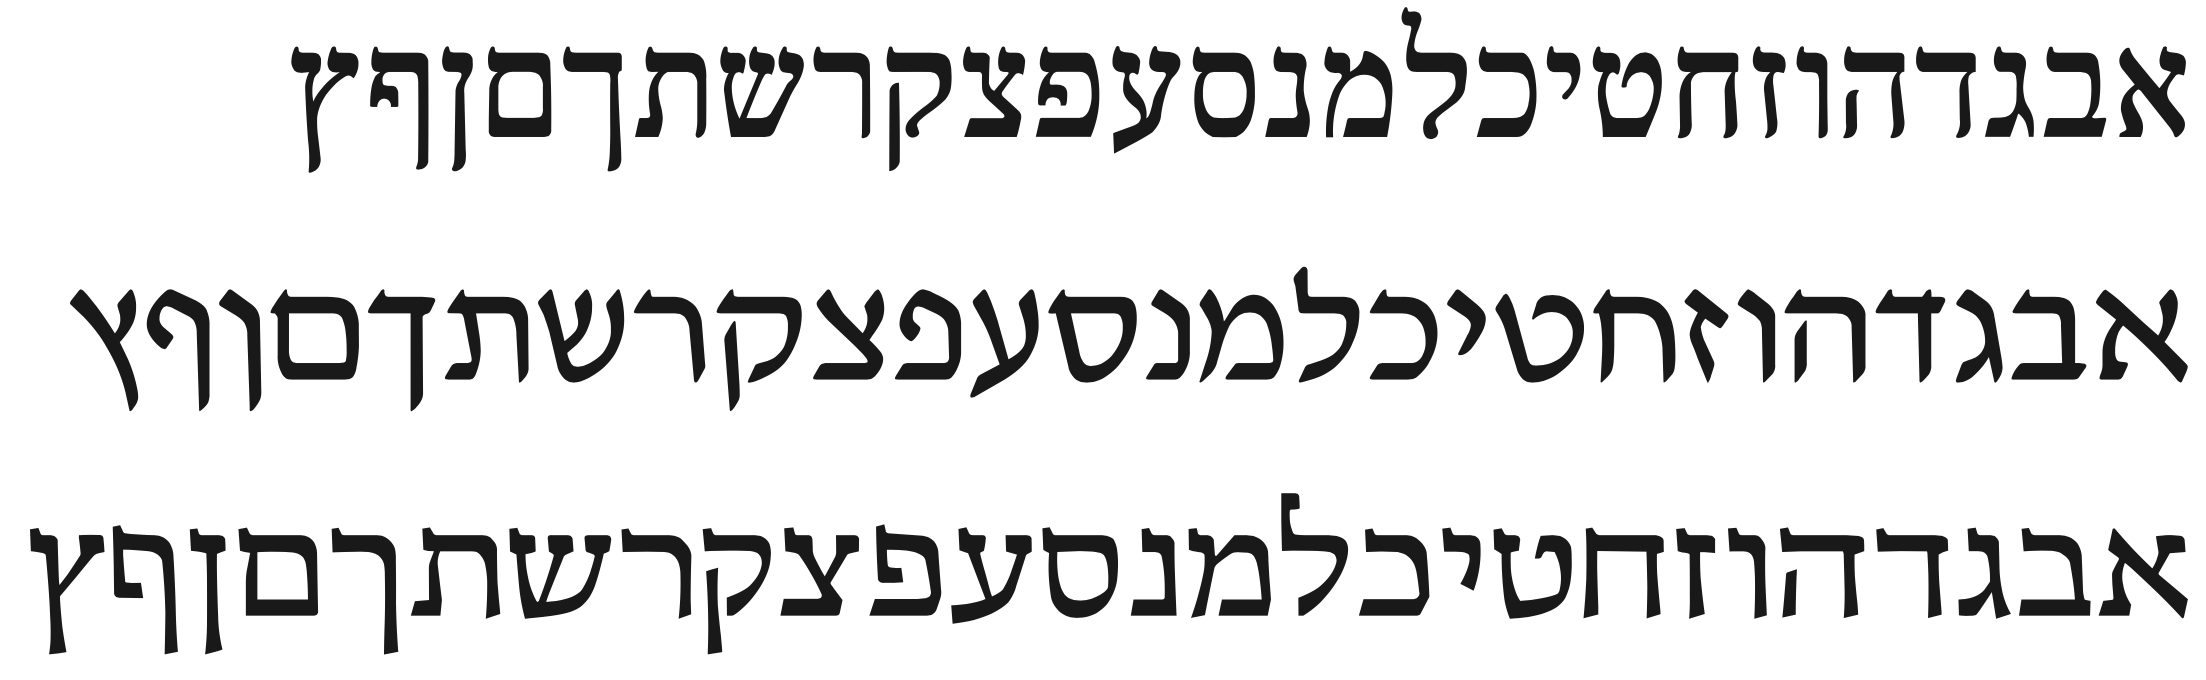 classic hebrew font